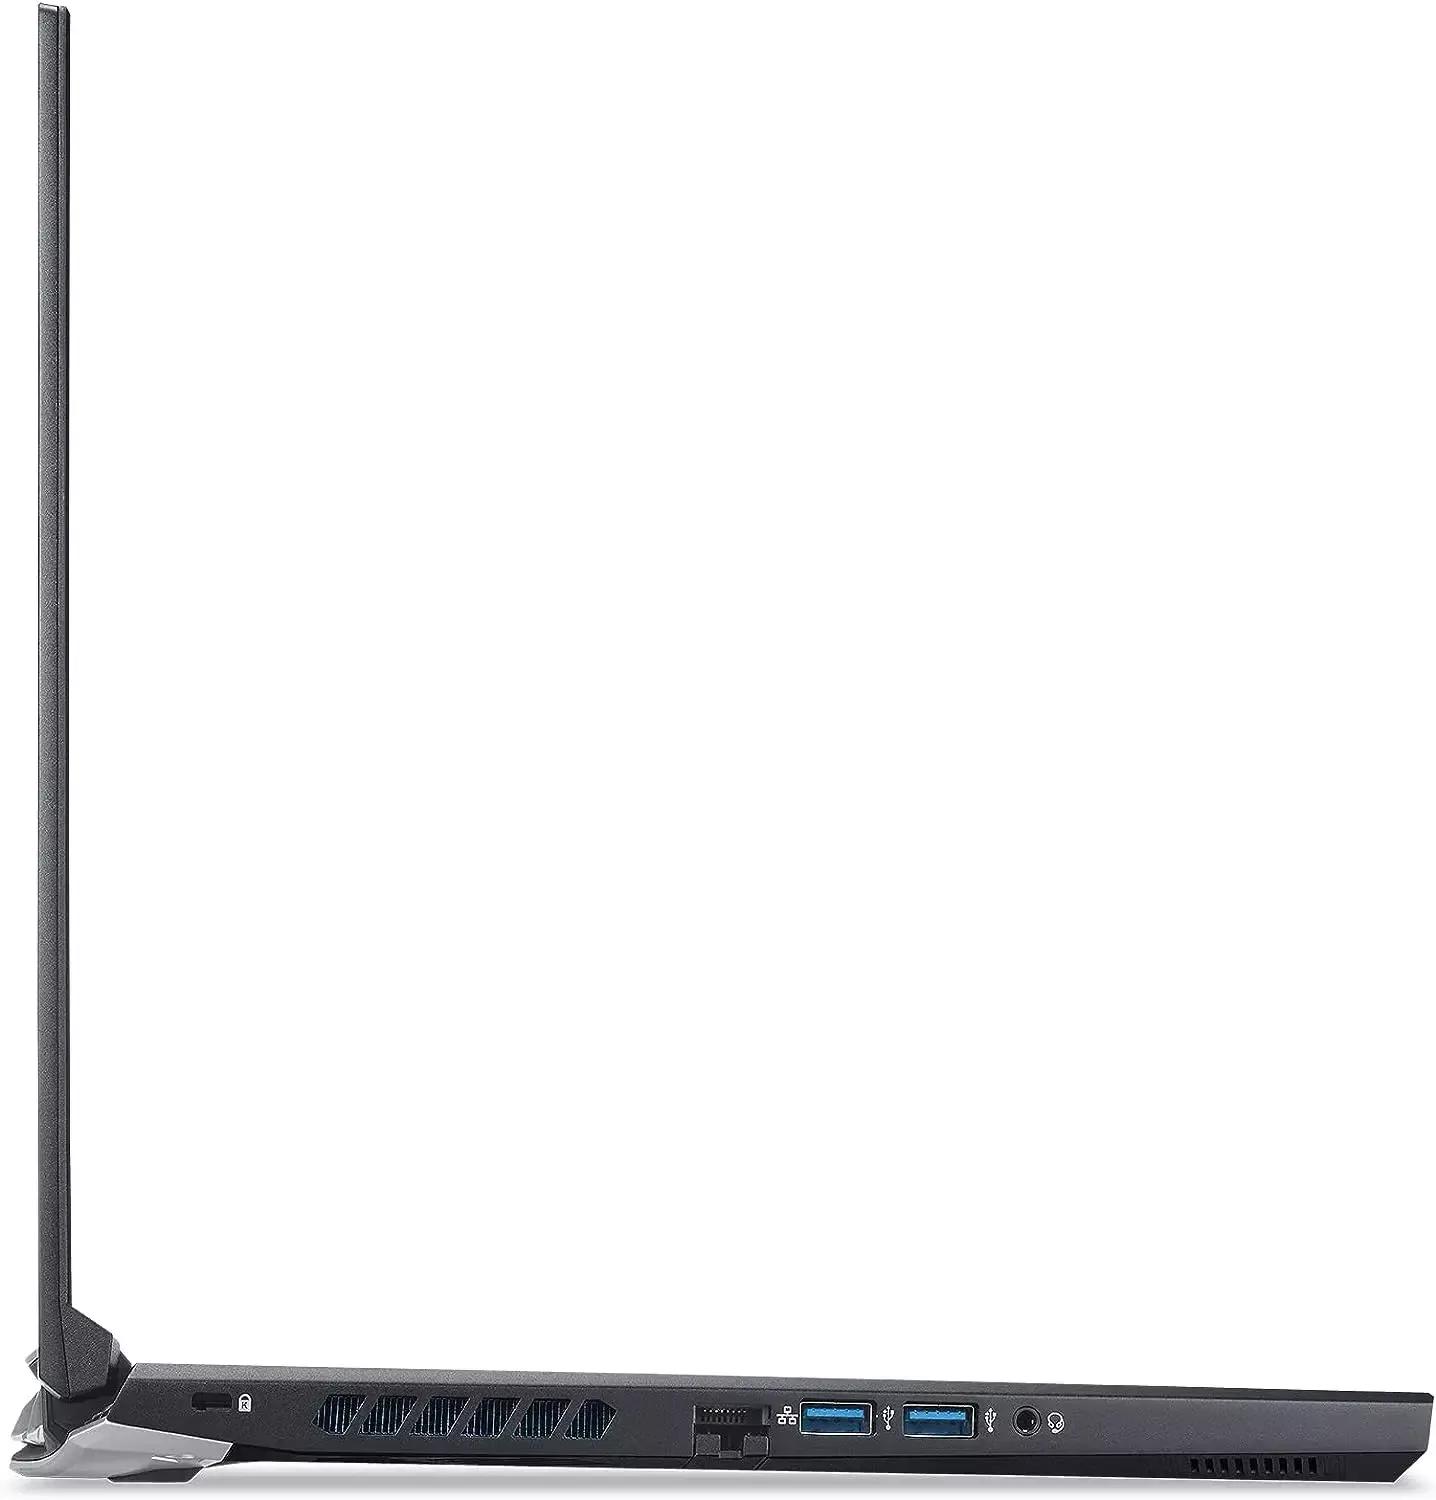 Acer Predator Helios 300 2021 i5 11th Gen / RTX 3060 / 16GB RAM / 512GB SSD / 15.6" QHD 165Hz Display